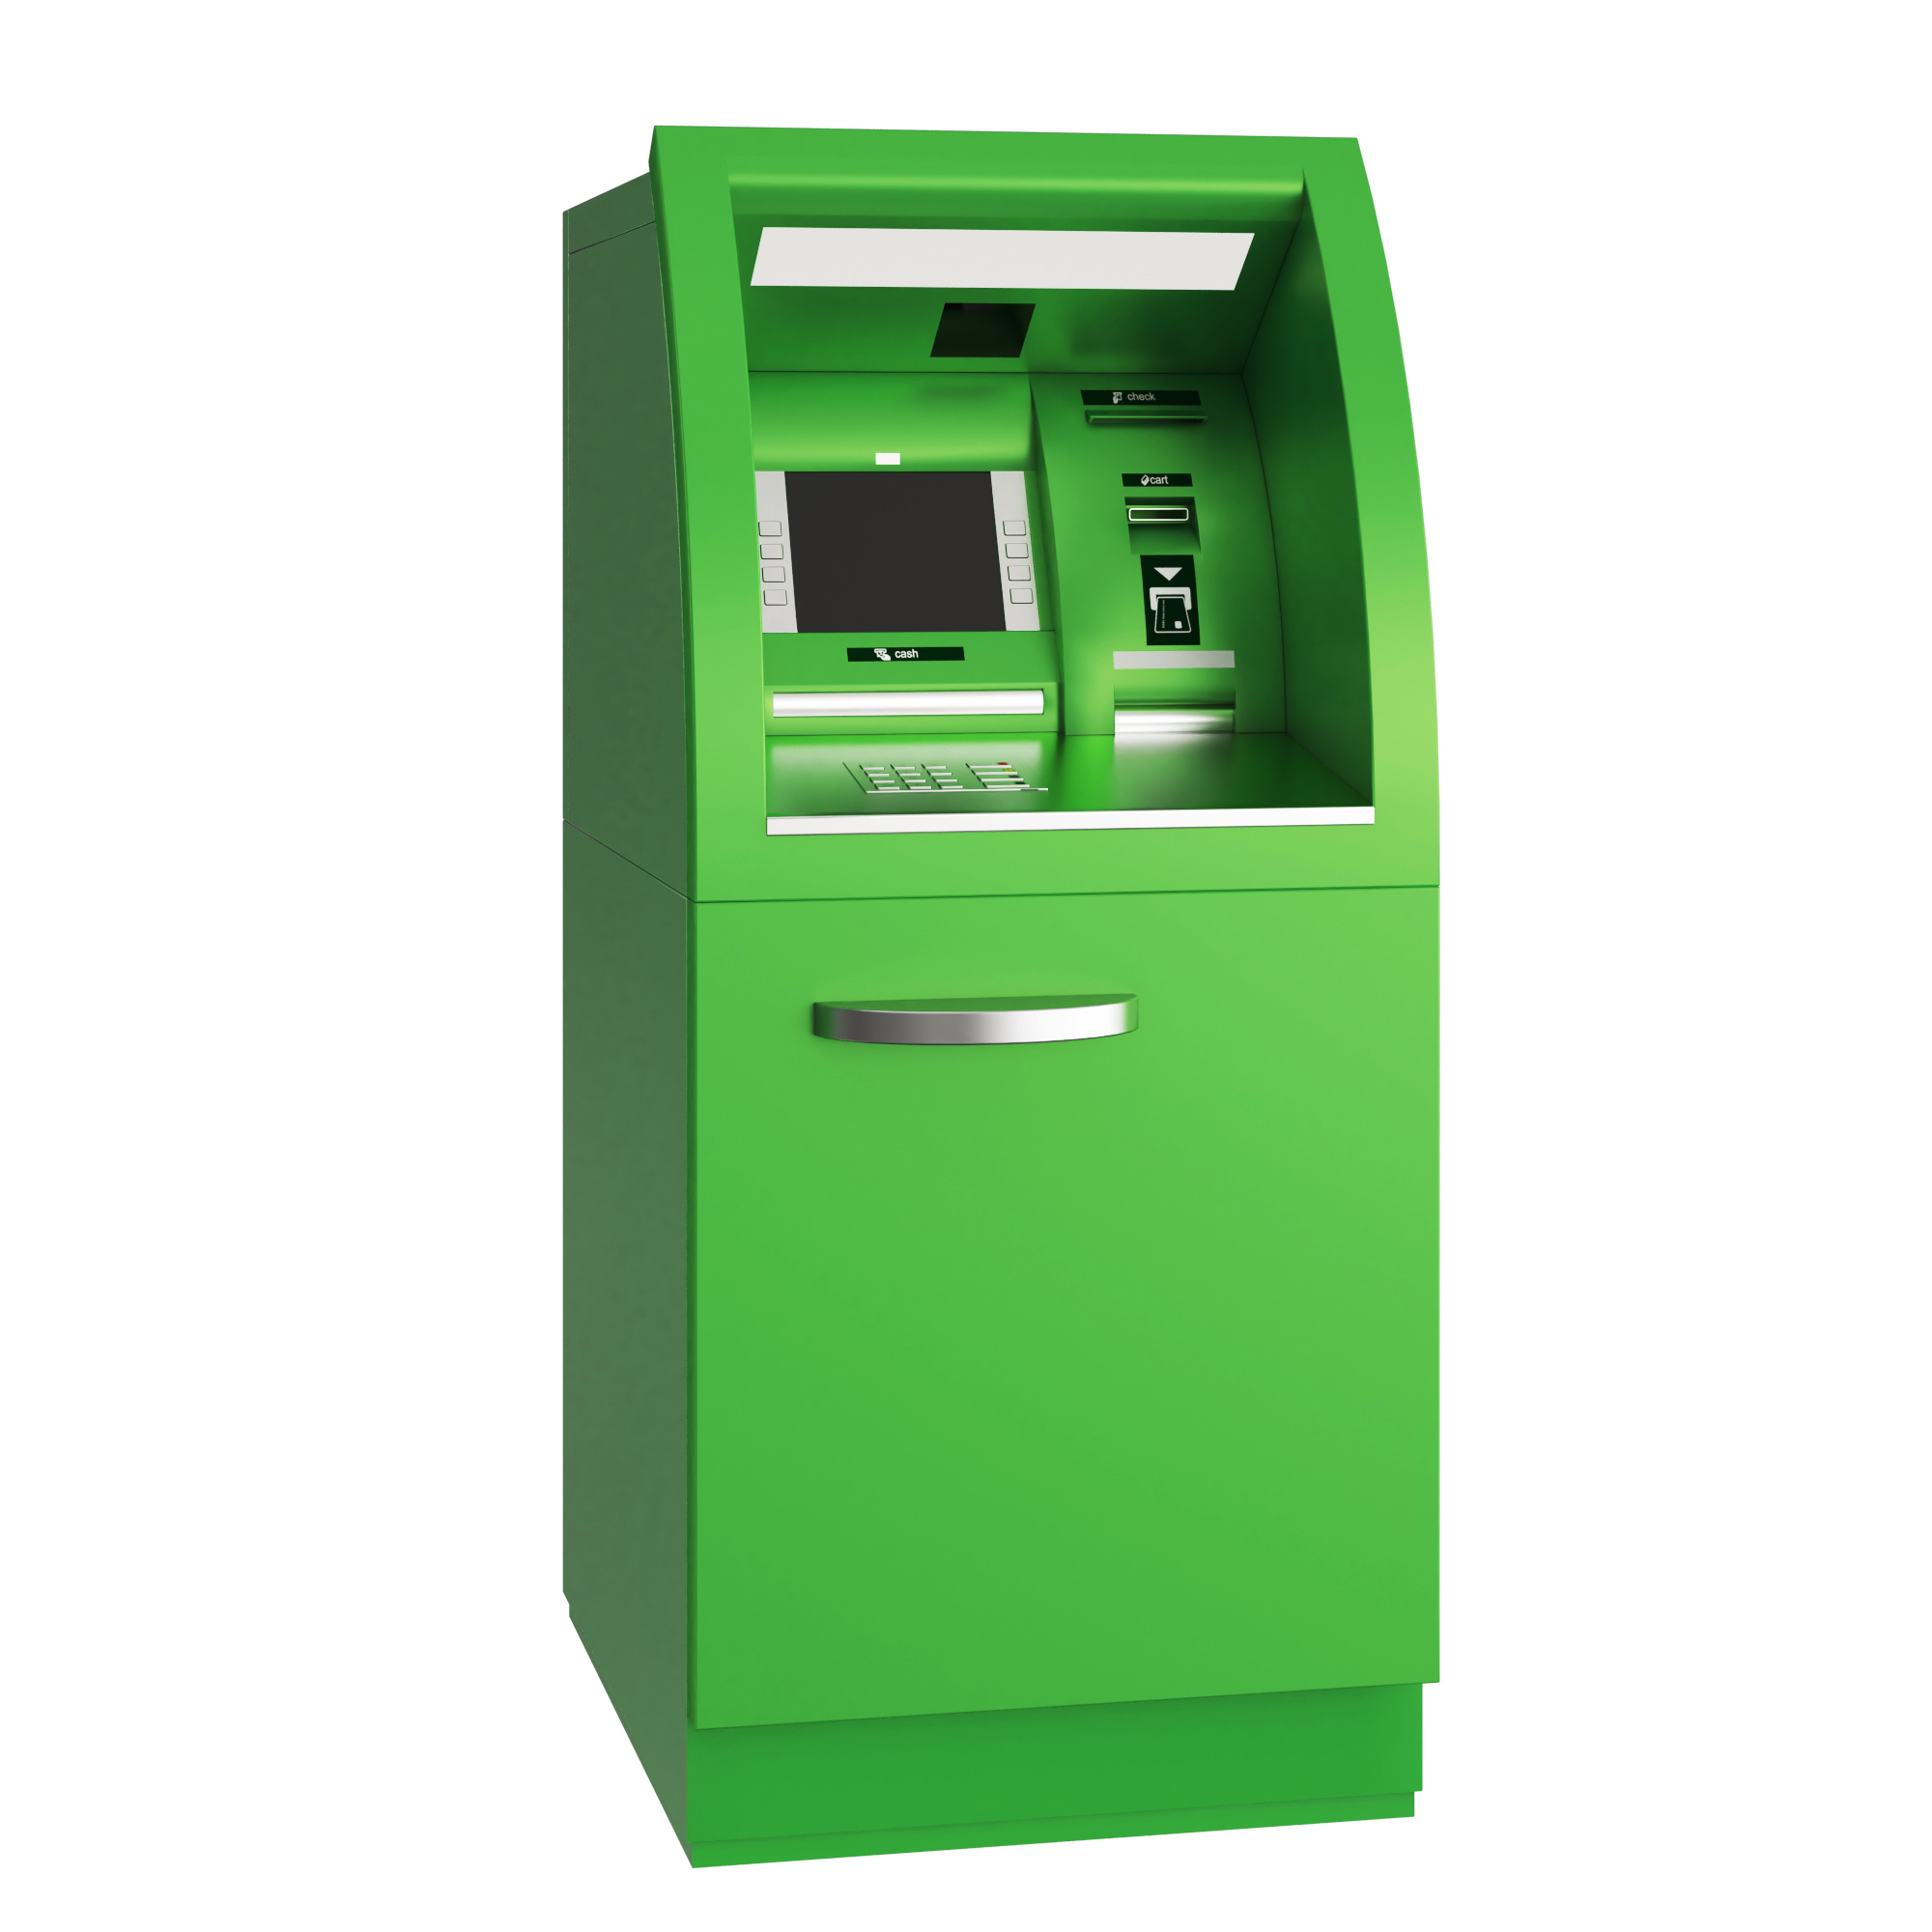 银行大堂机设计案例|ATM机设计|金融设备设计